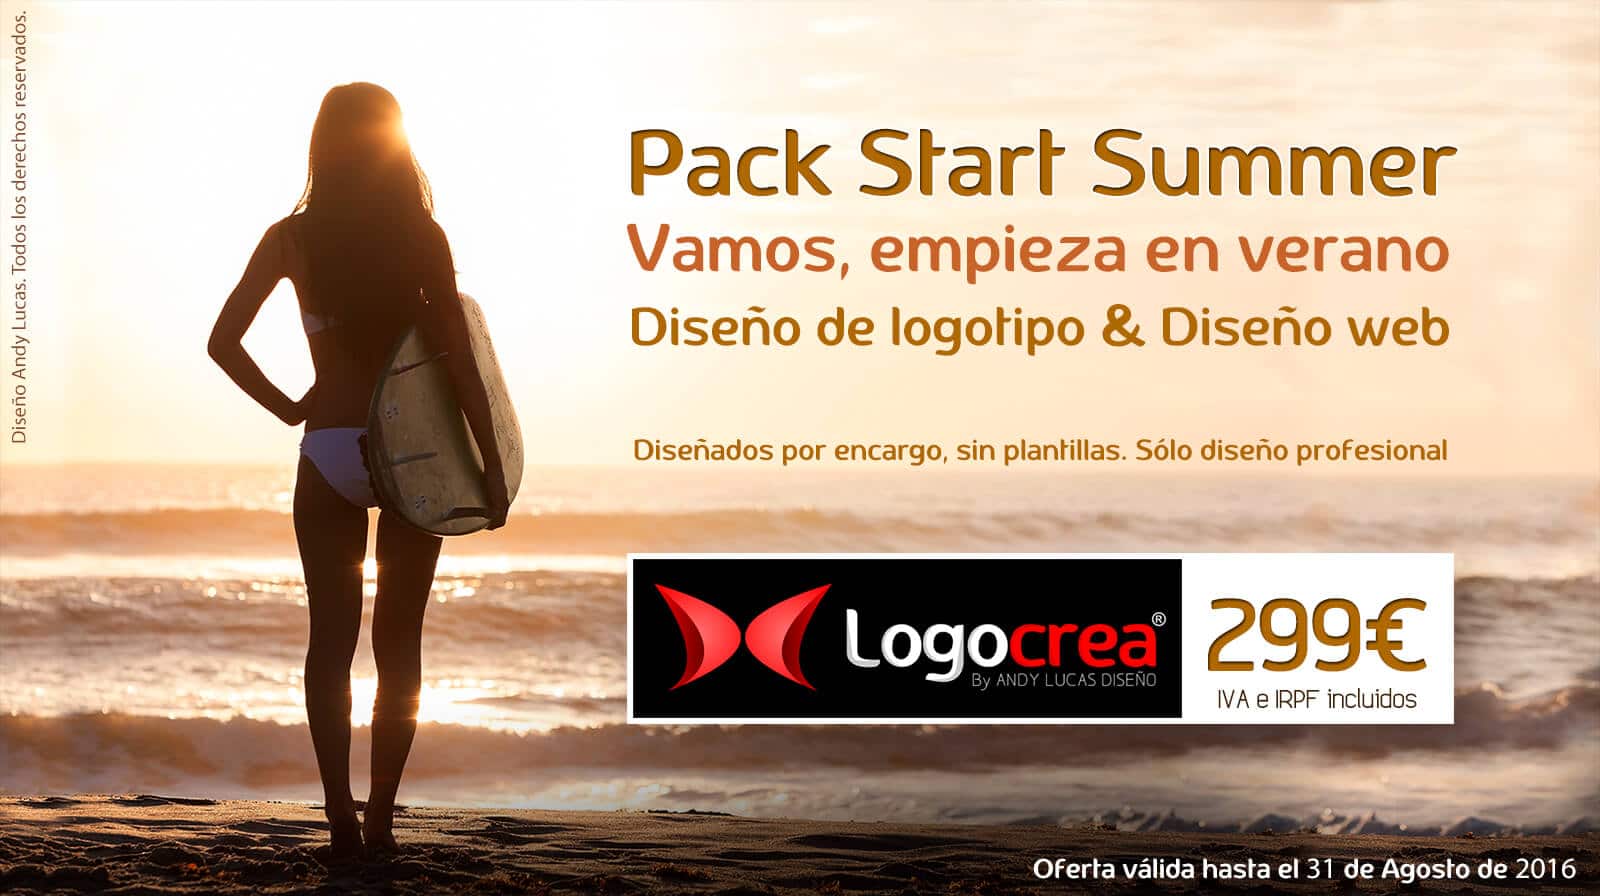 Diseño de logotipo y web por 299€ con StartSUMMER